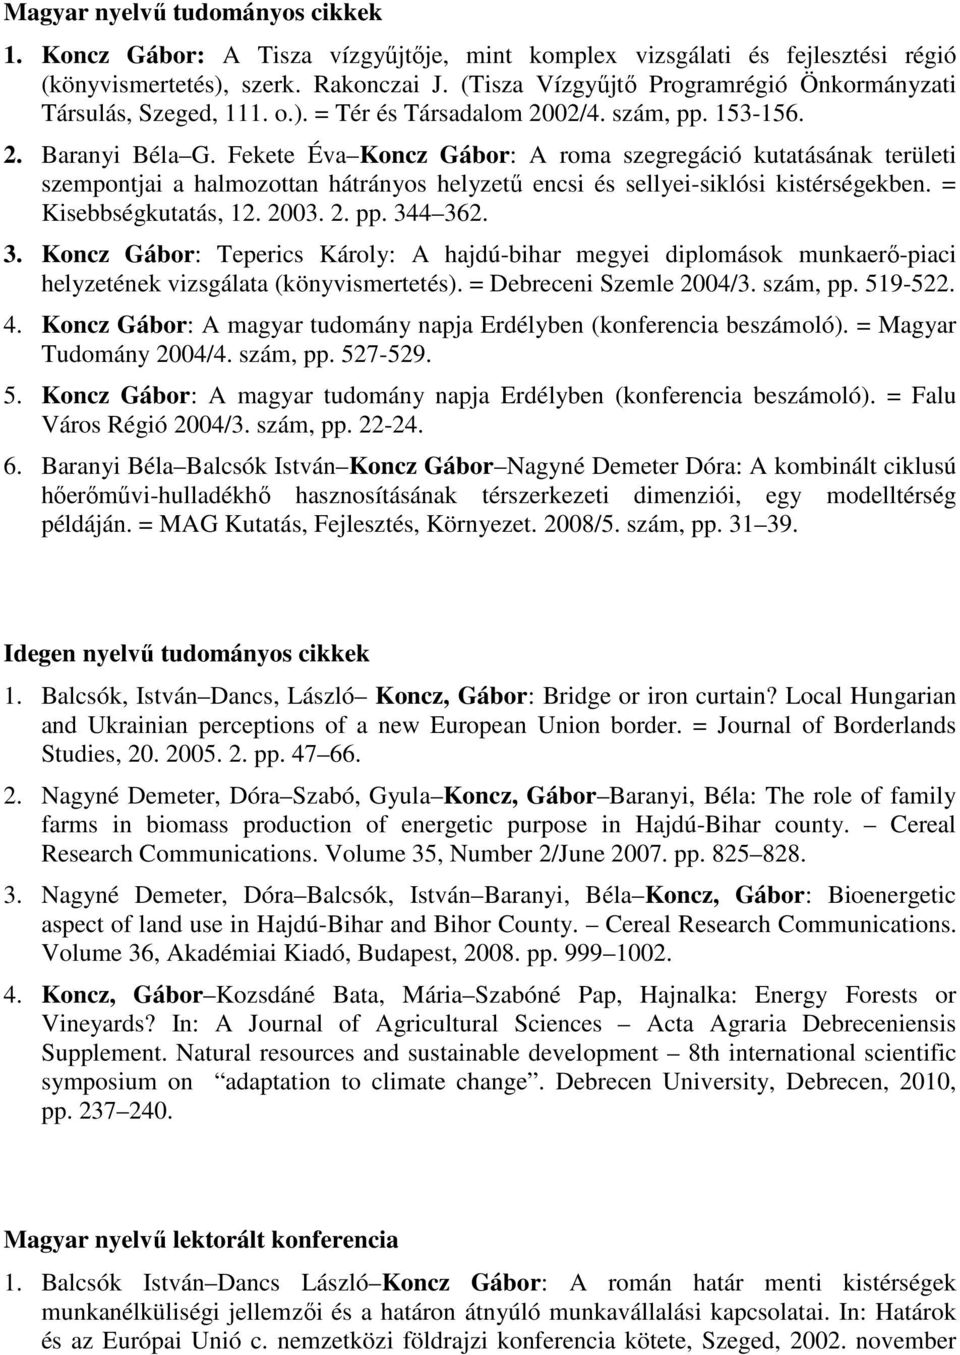 Fekete Éva Koncz Gábor: A roma szegregáció kutatásának területi szempontjai a halmozottan hátrányos helyzetű encsi és sellyei-siklósi kistérségekben. = Kisebbségkutatás, 12. 2003. 2. pp. 34